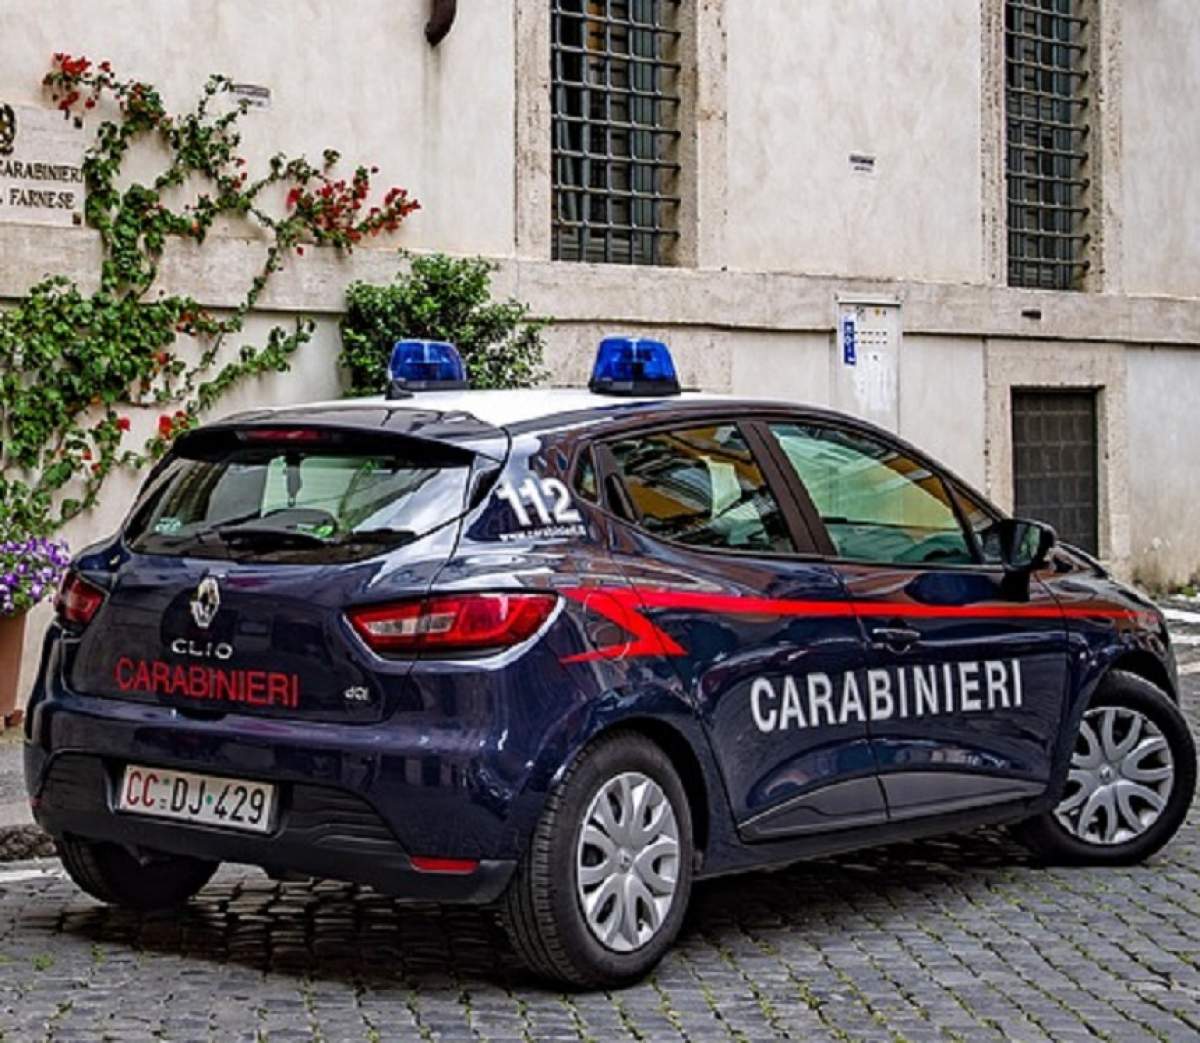 Un român de 21 de ani a fost arestat în Italia, după ce a abuzat un elev. Totul, pentru 15 euro!